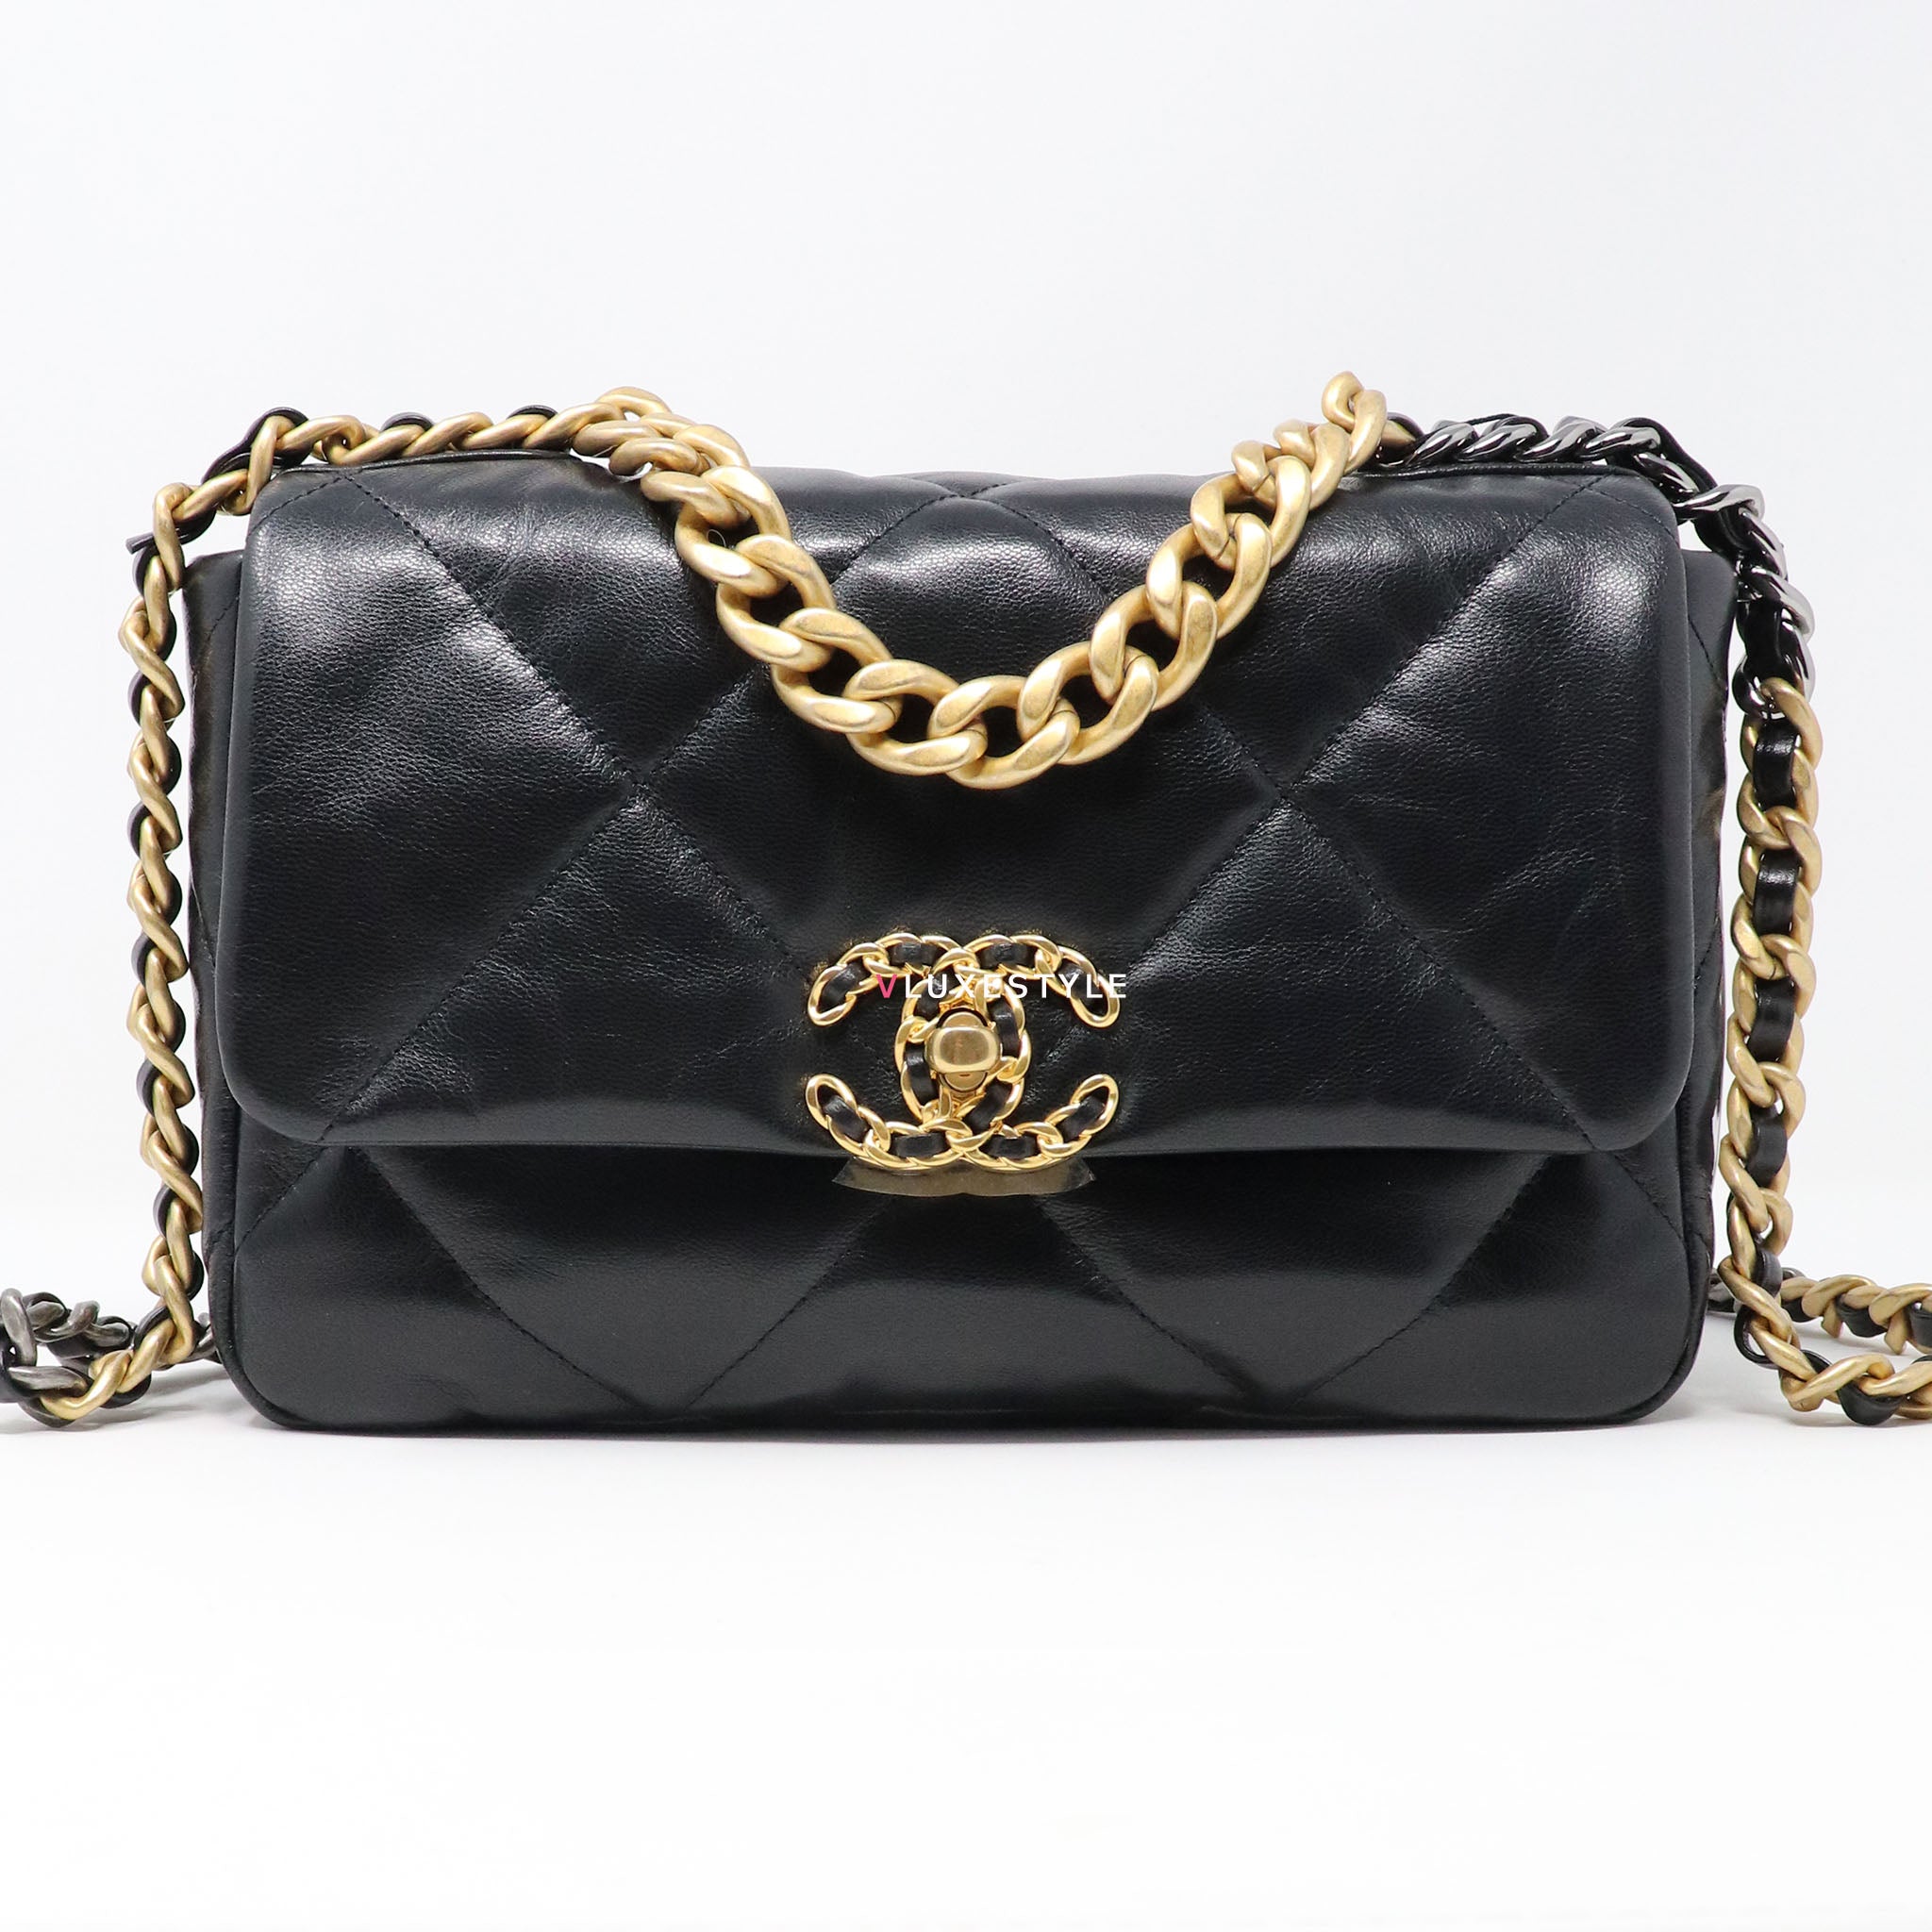 Chanel Black Goatskin Small Chanel 19 Flap Bag, myGemma